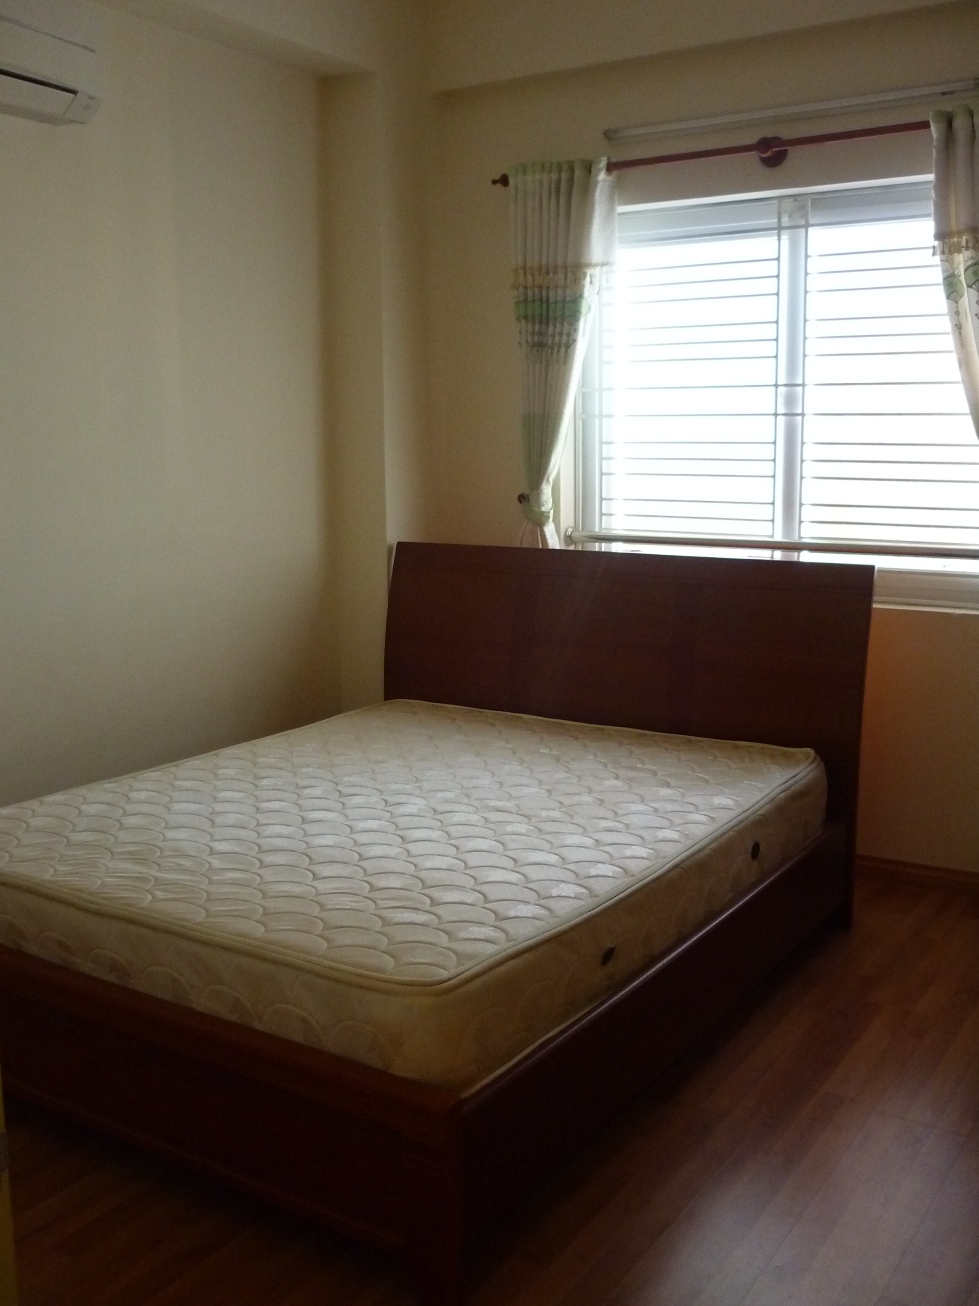 Cho thuê căn hộ chung cư Minh Thành Q7,2 phòng ngủ, 90m2, 9tr/th nội thất đầy đủ, sàn gỗ